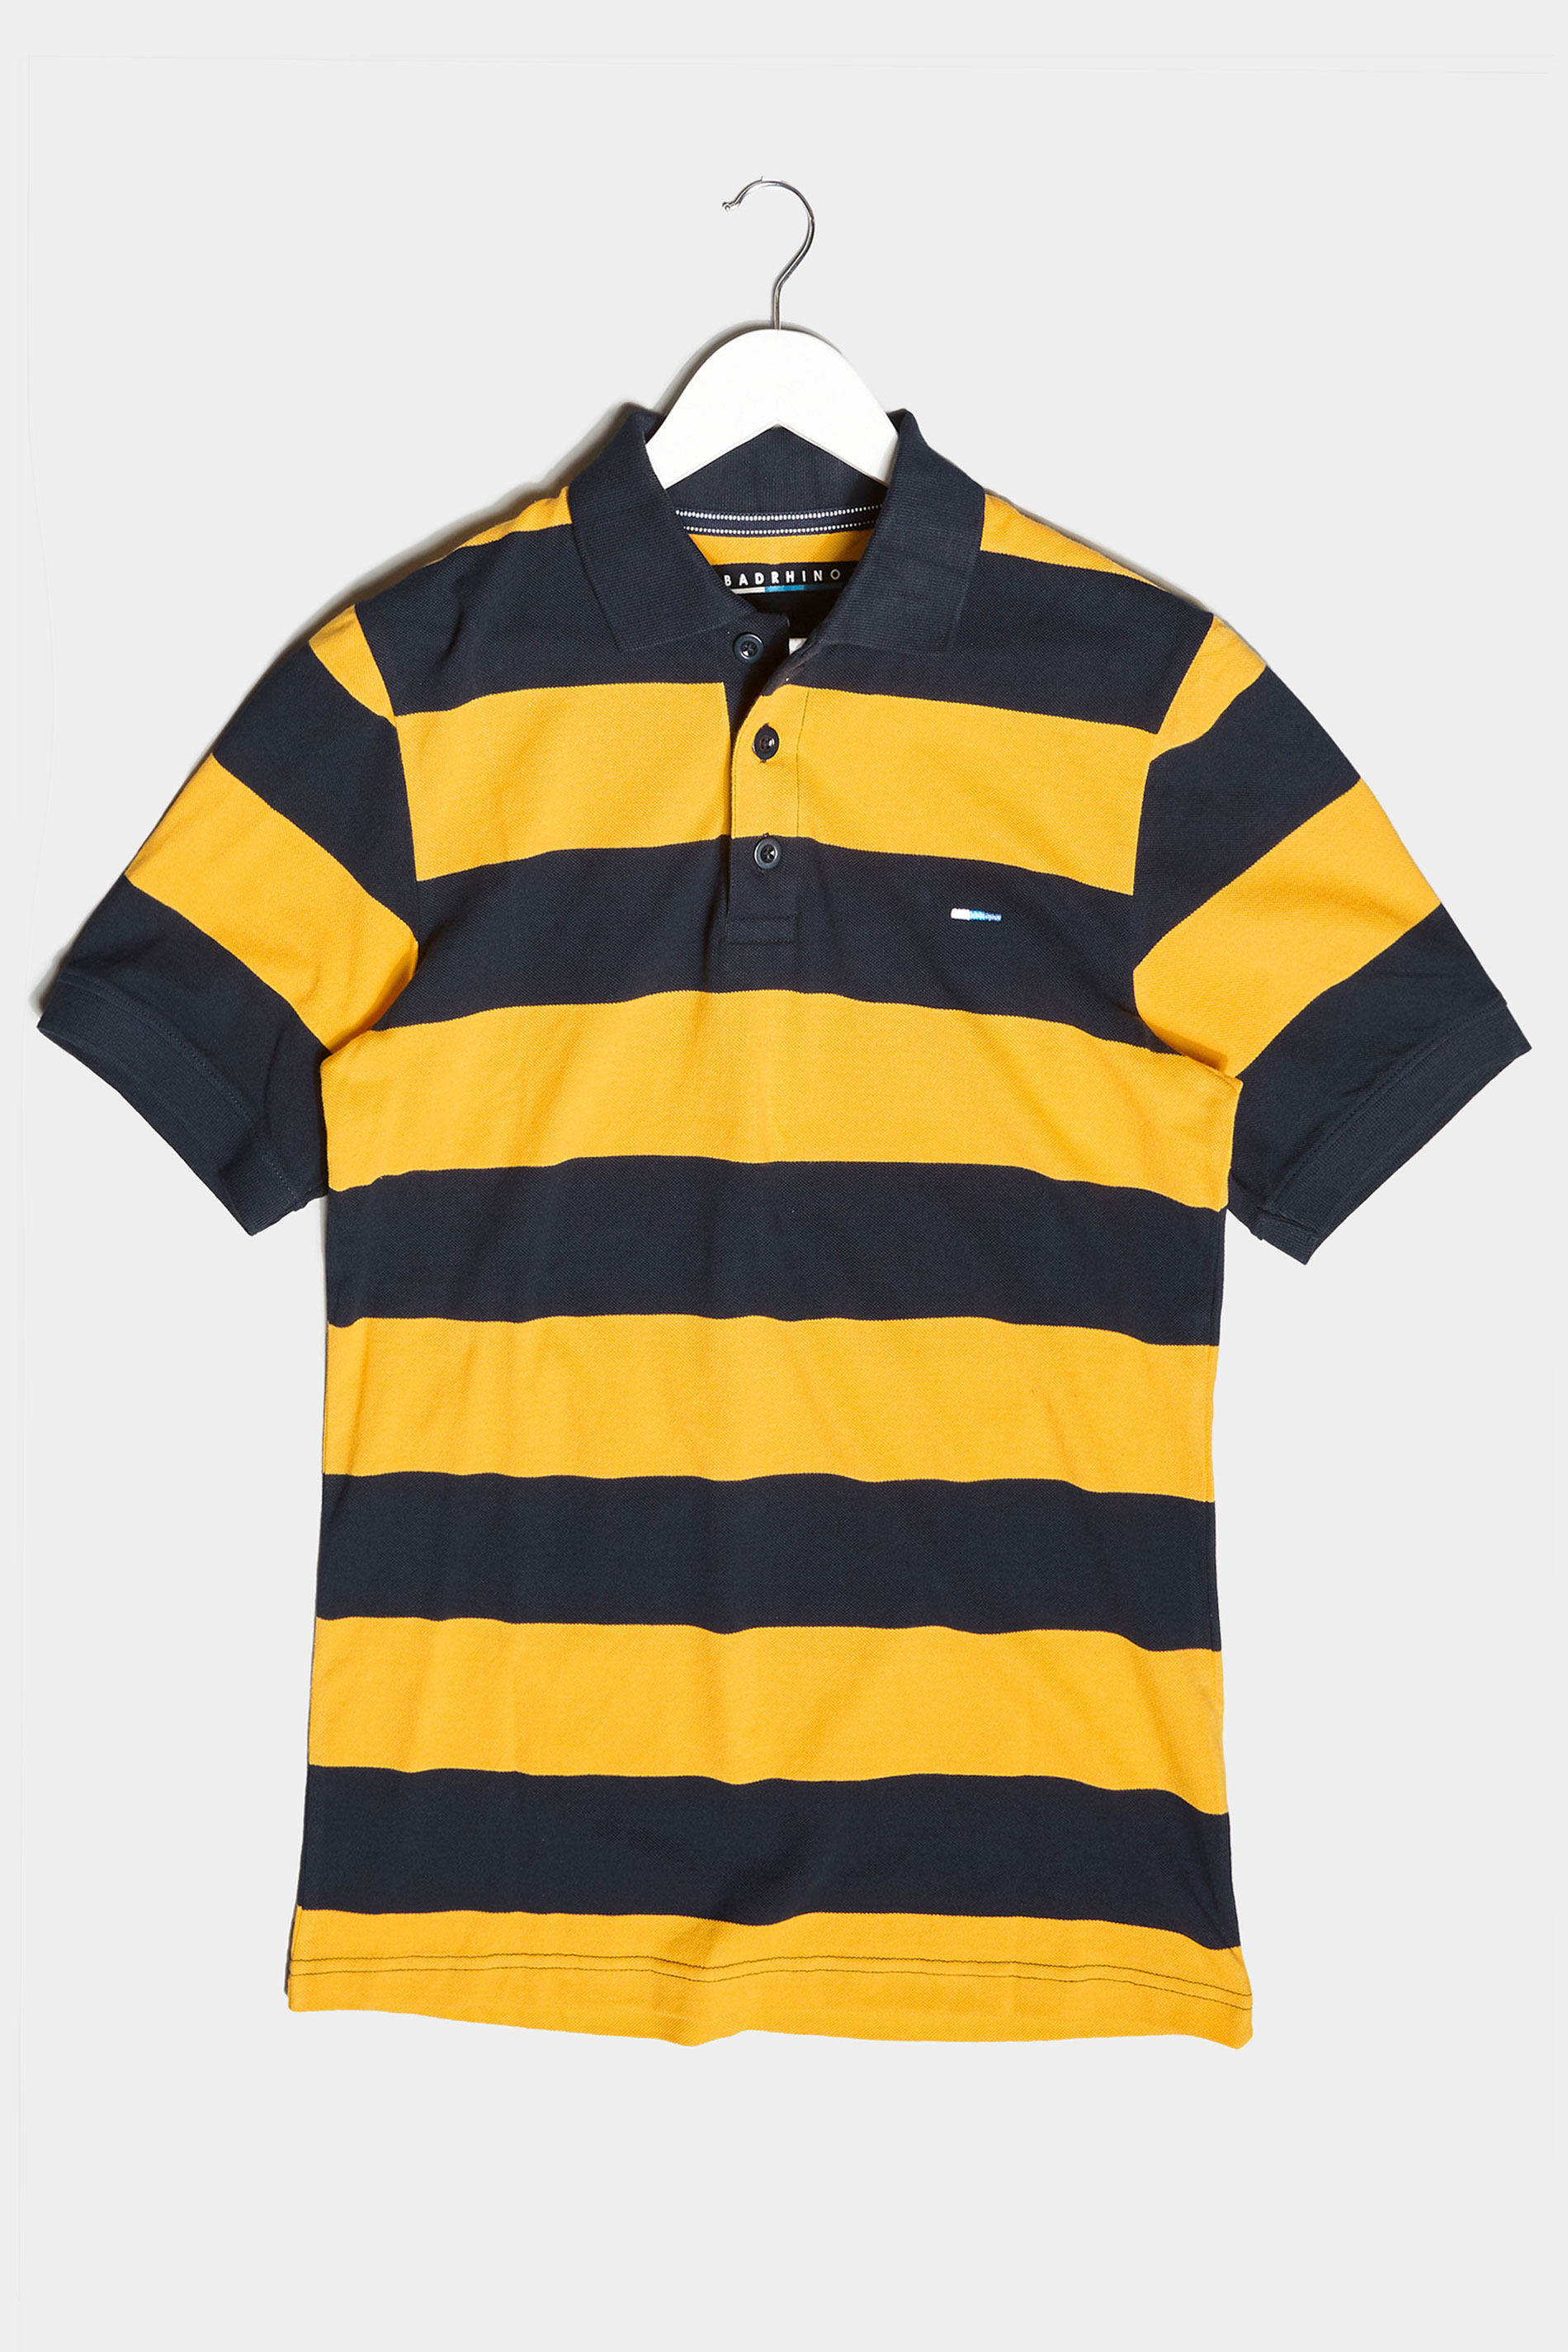 black and yellow polo shirt